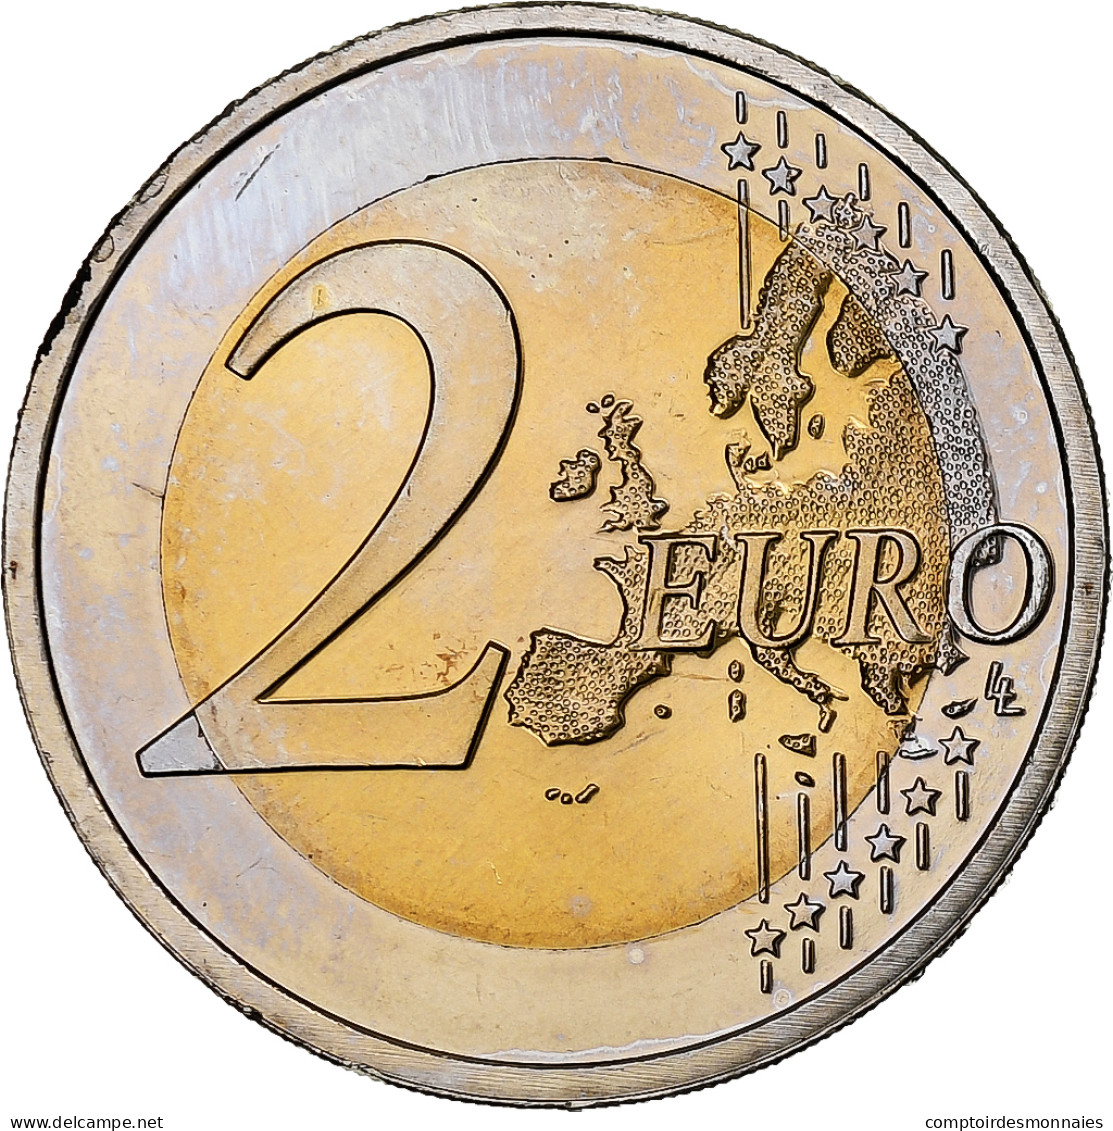 Pays-Bas, 2 Euro, Traité De Rome 50 Ans, 2007, Utrecht, SPL, Bimétallique - Pays-Bas